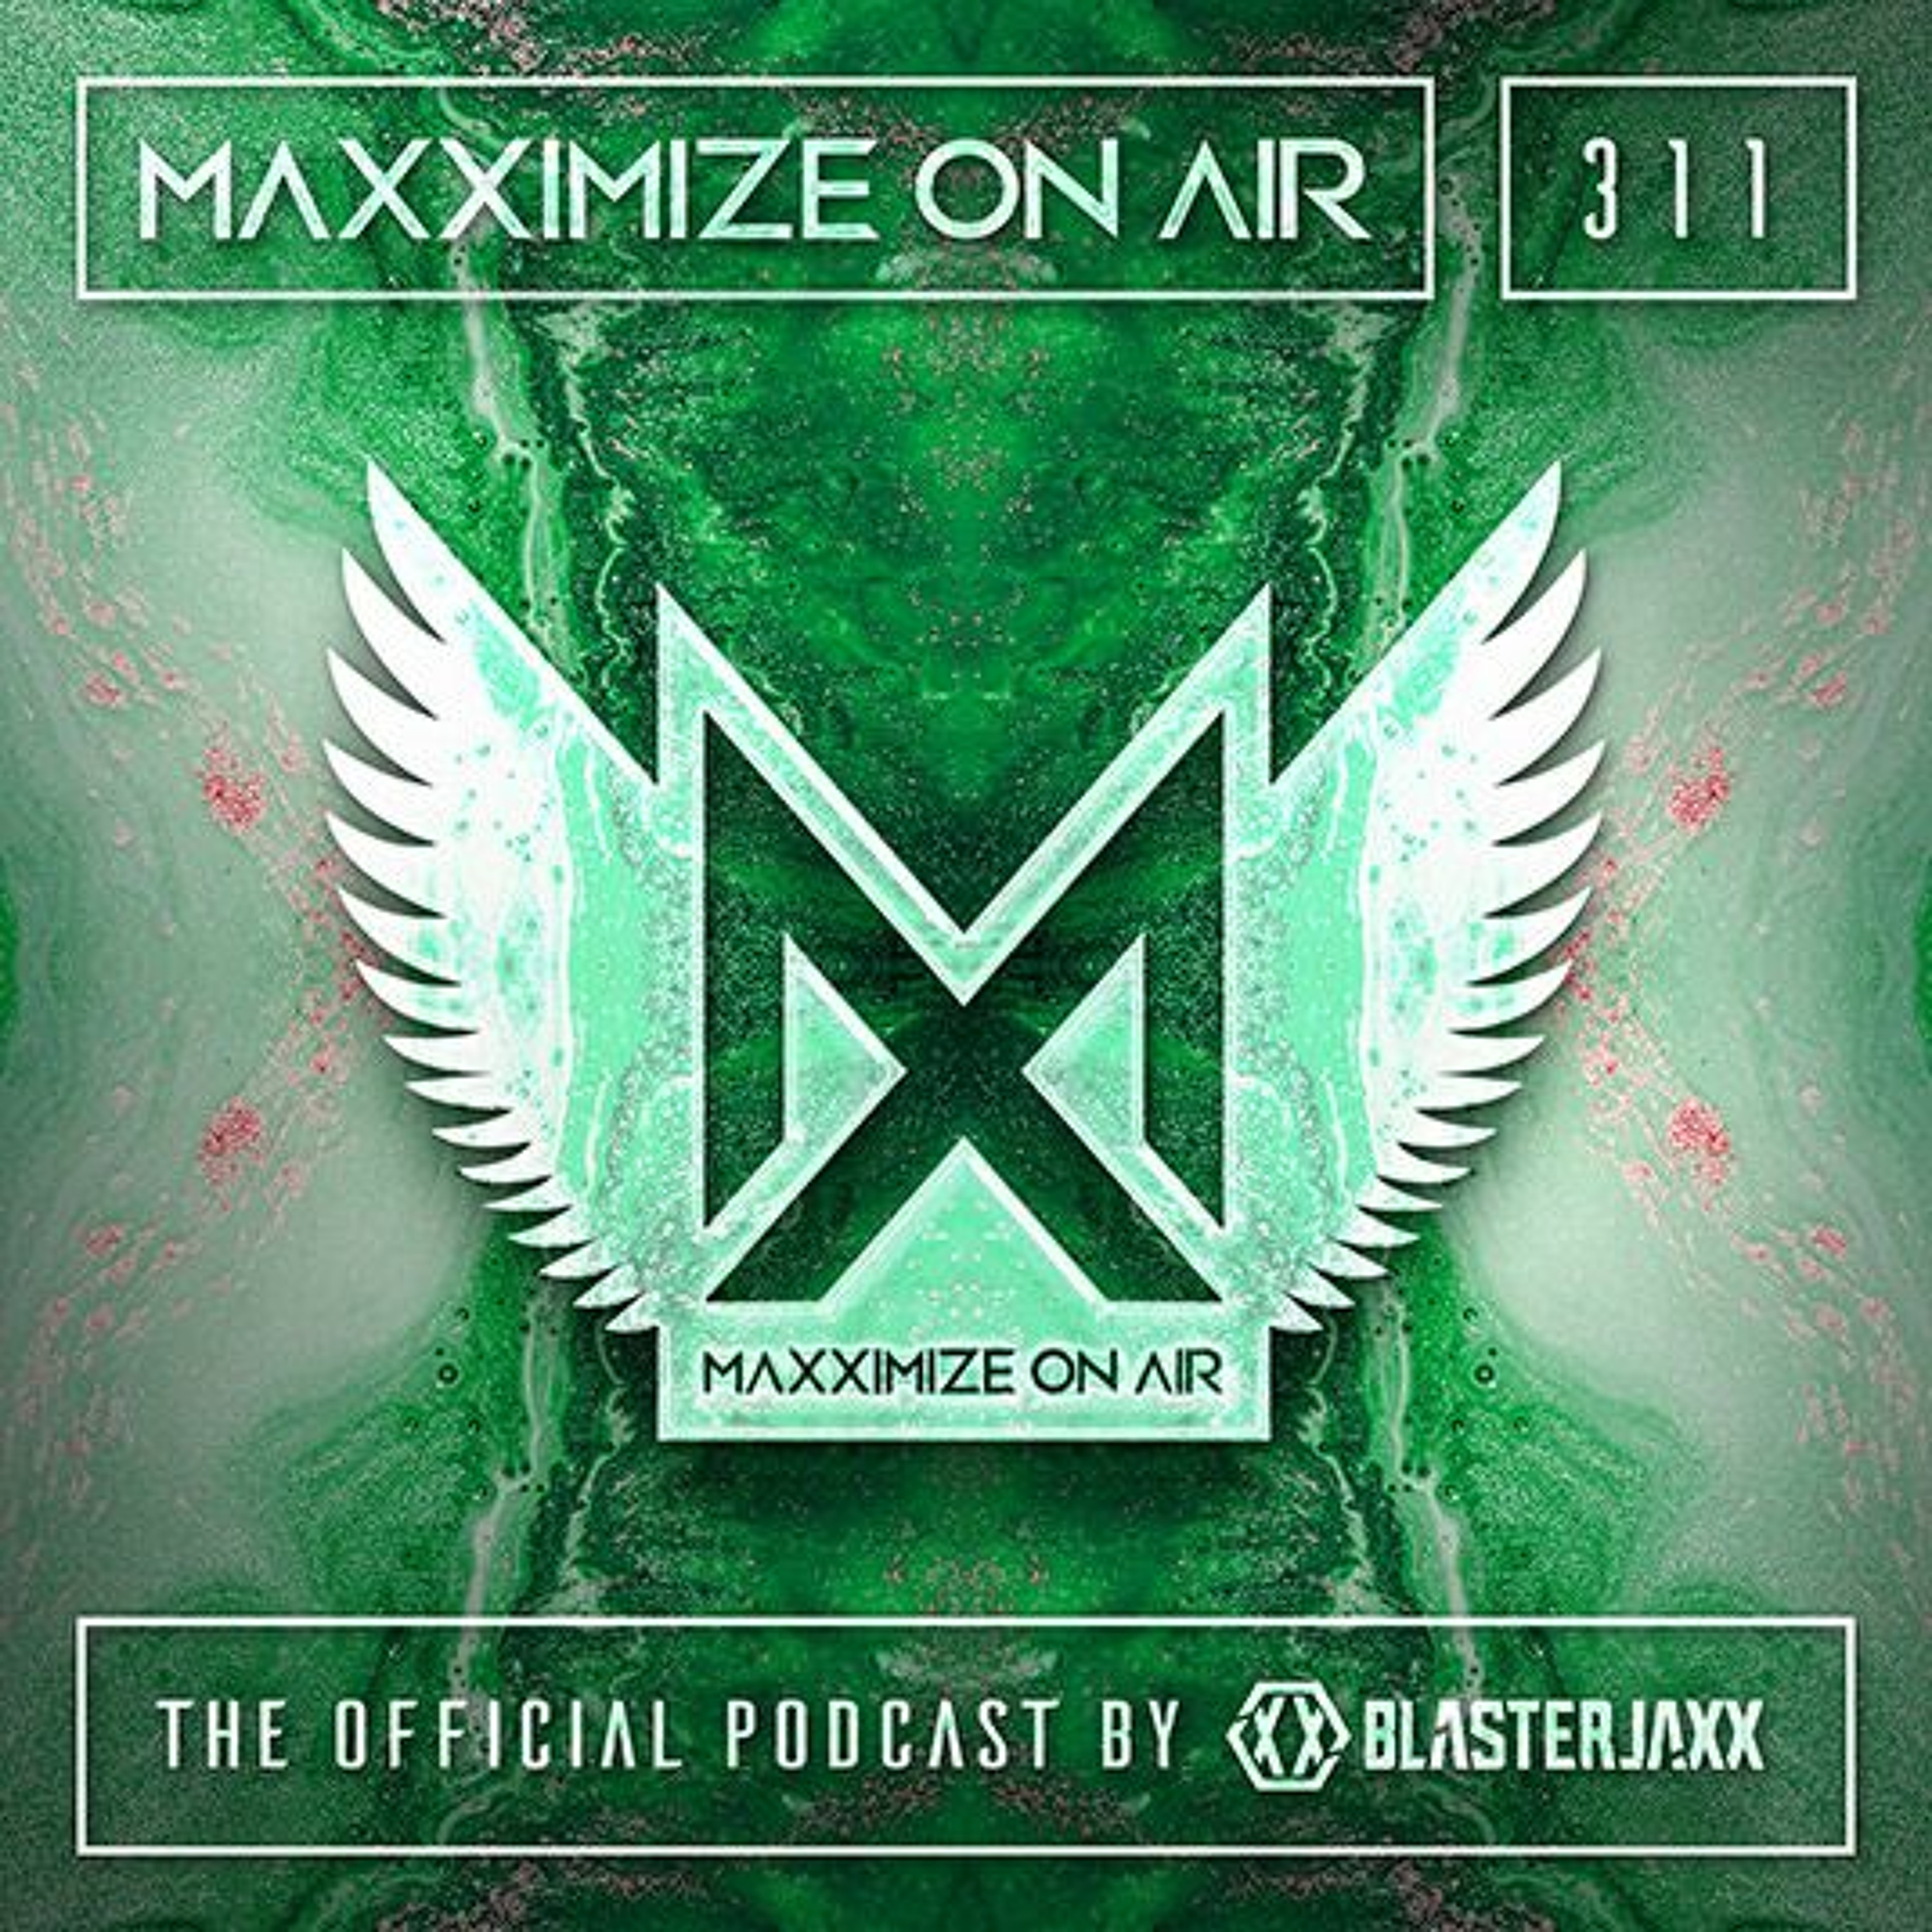 Blasterjaxx present Maxximize On Air #311